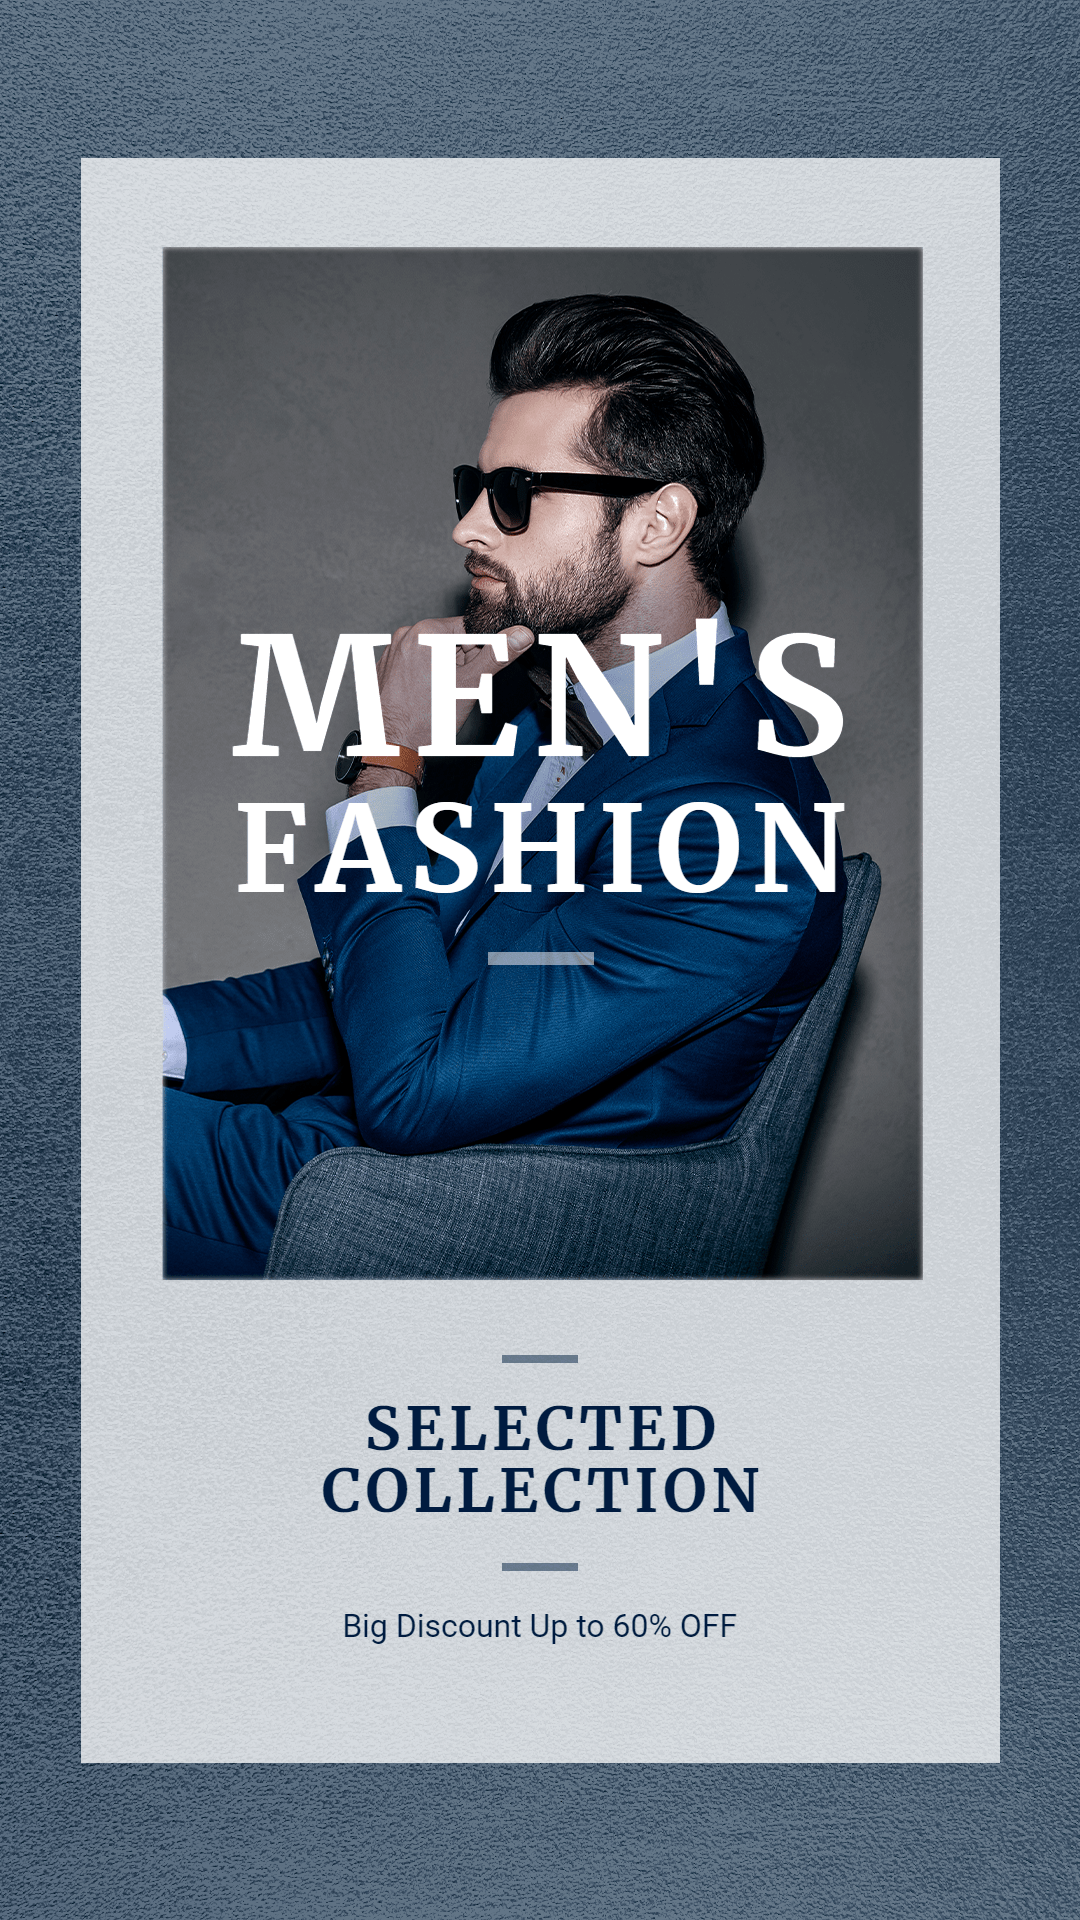 Men's Fashion Sale Promotion Ecommerce Story预览效果